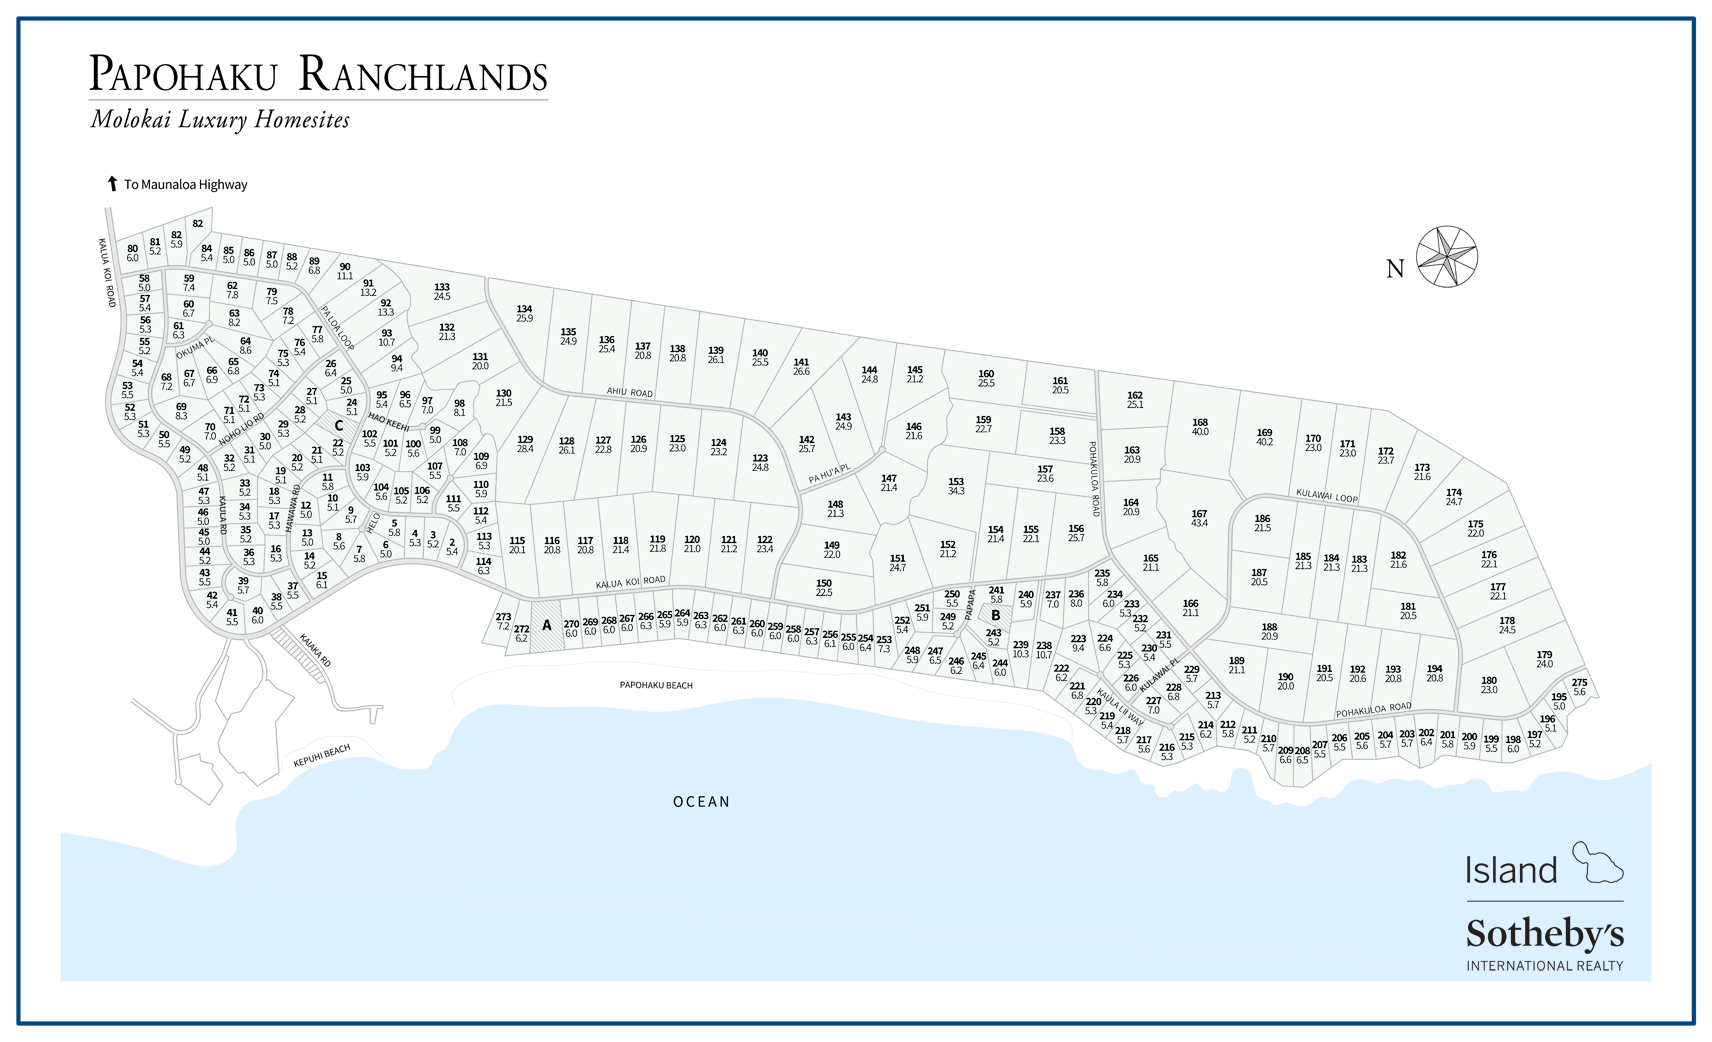 Papohaku Ranchlands Map